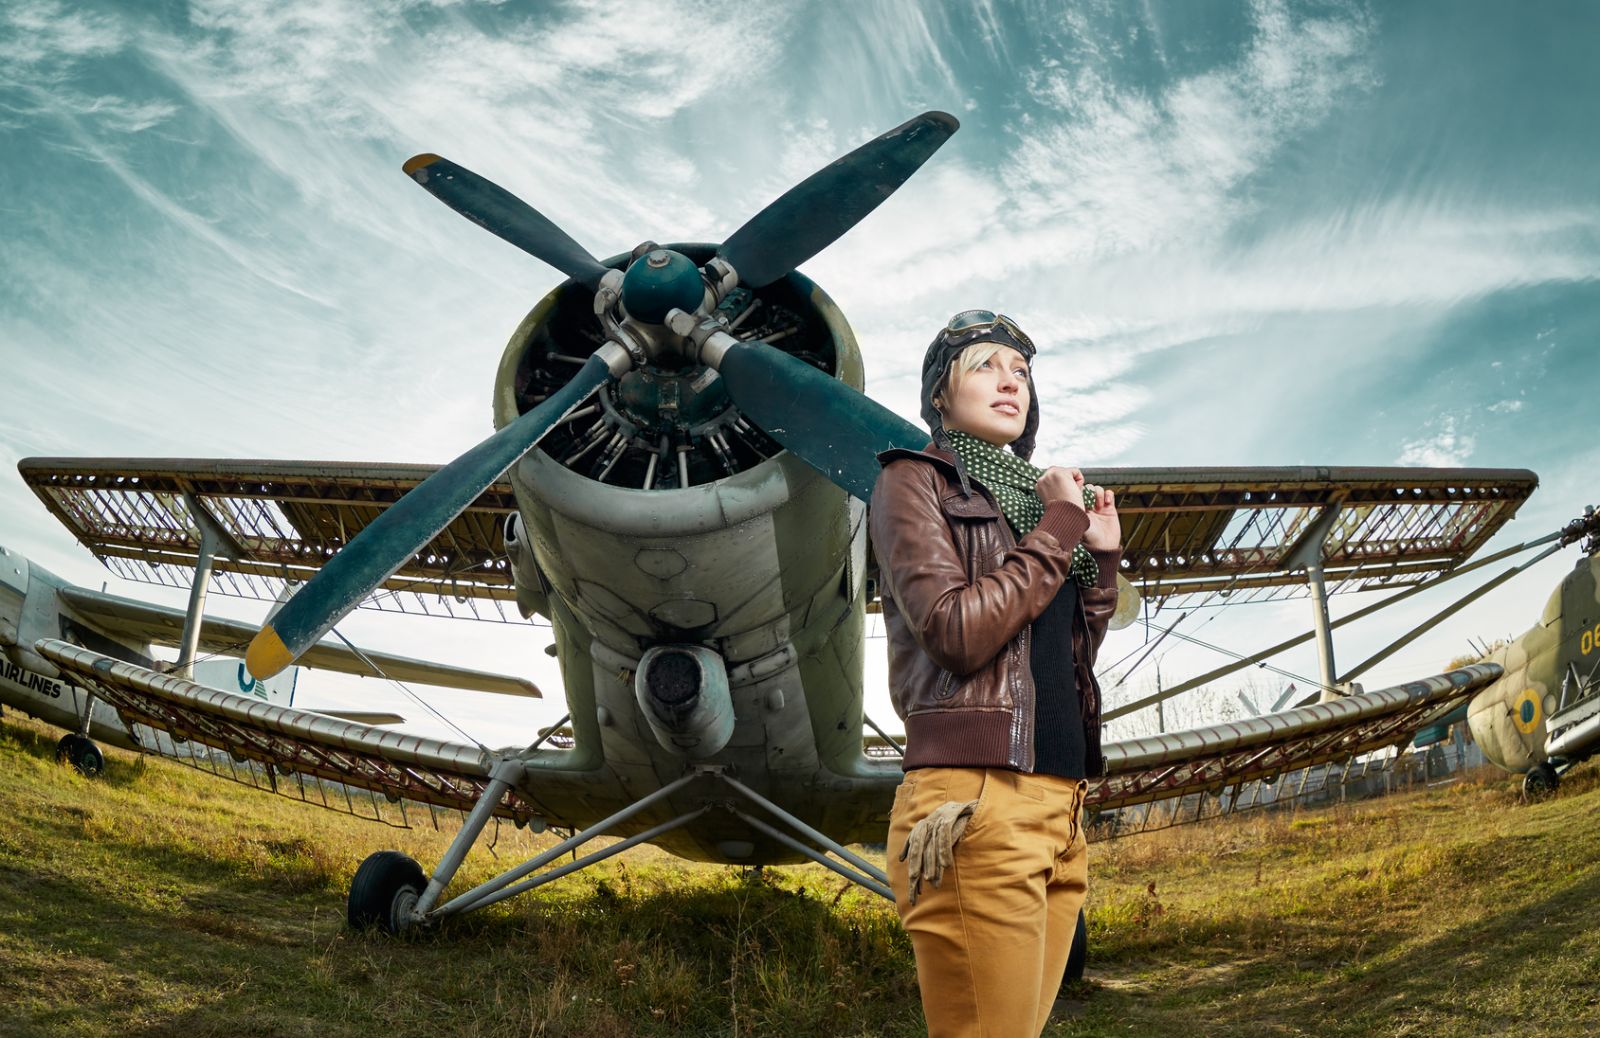 Donne contro gli stereotipi: le pioniere dell'aviazione